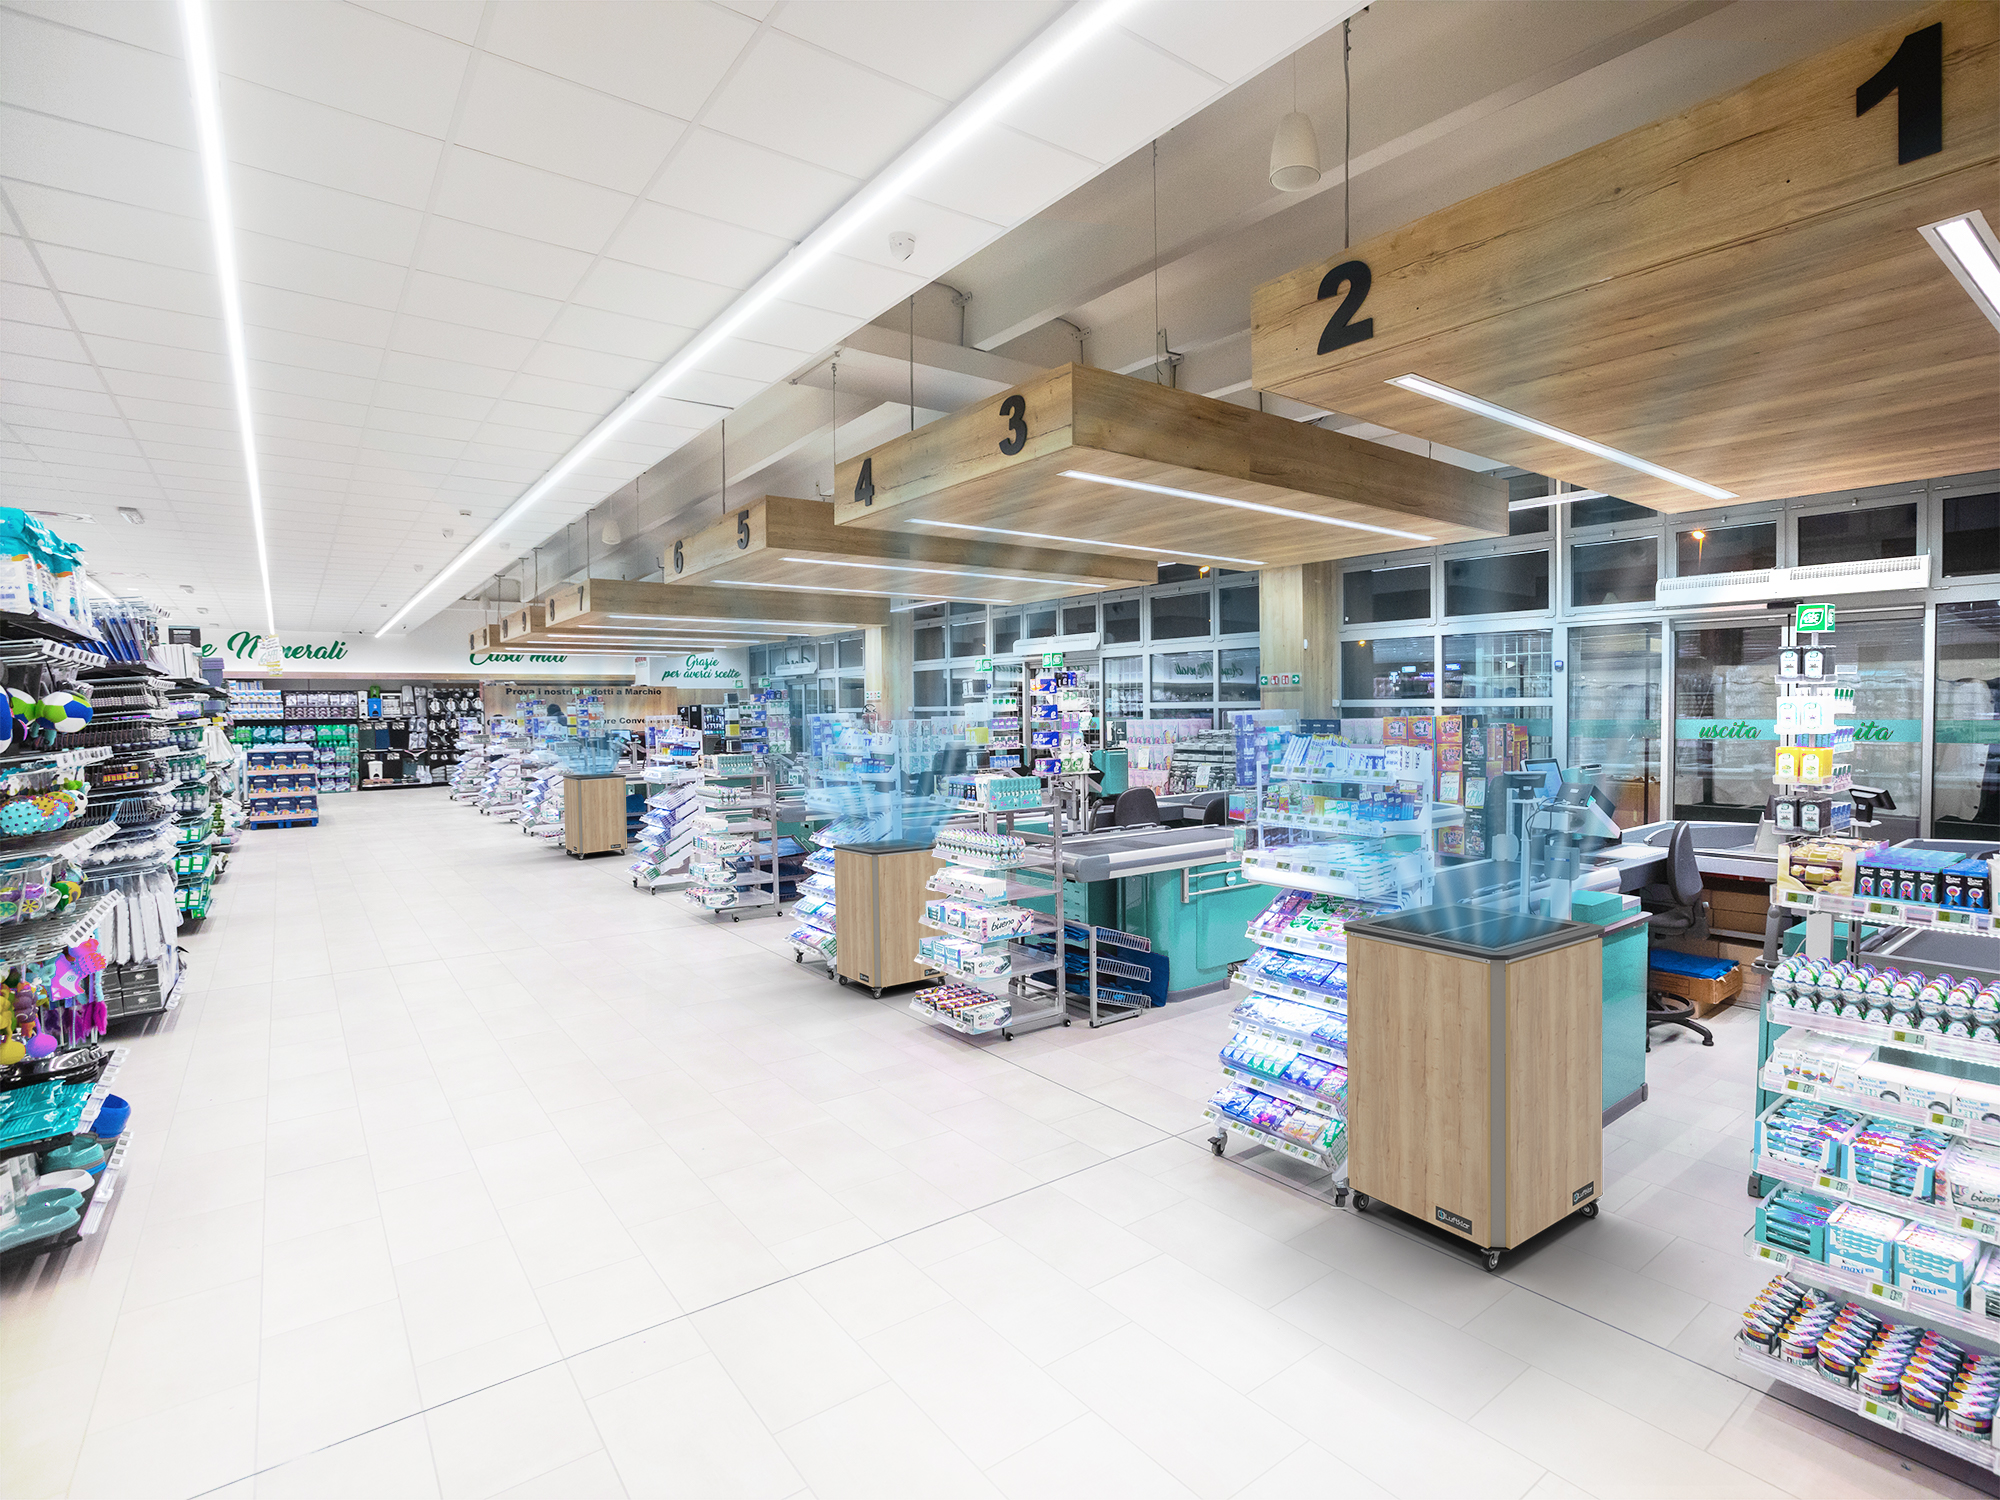 Luftklar Luftreiniger in der Kassenzone in einem Supermarkt